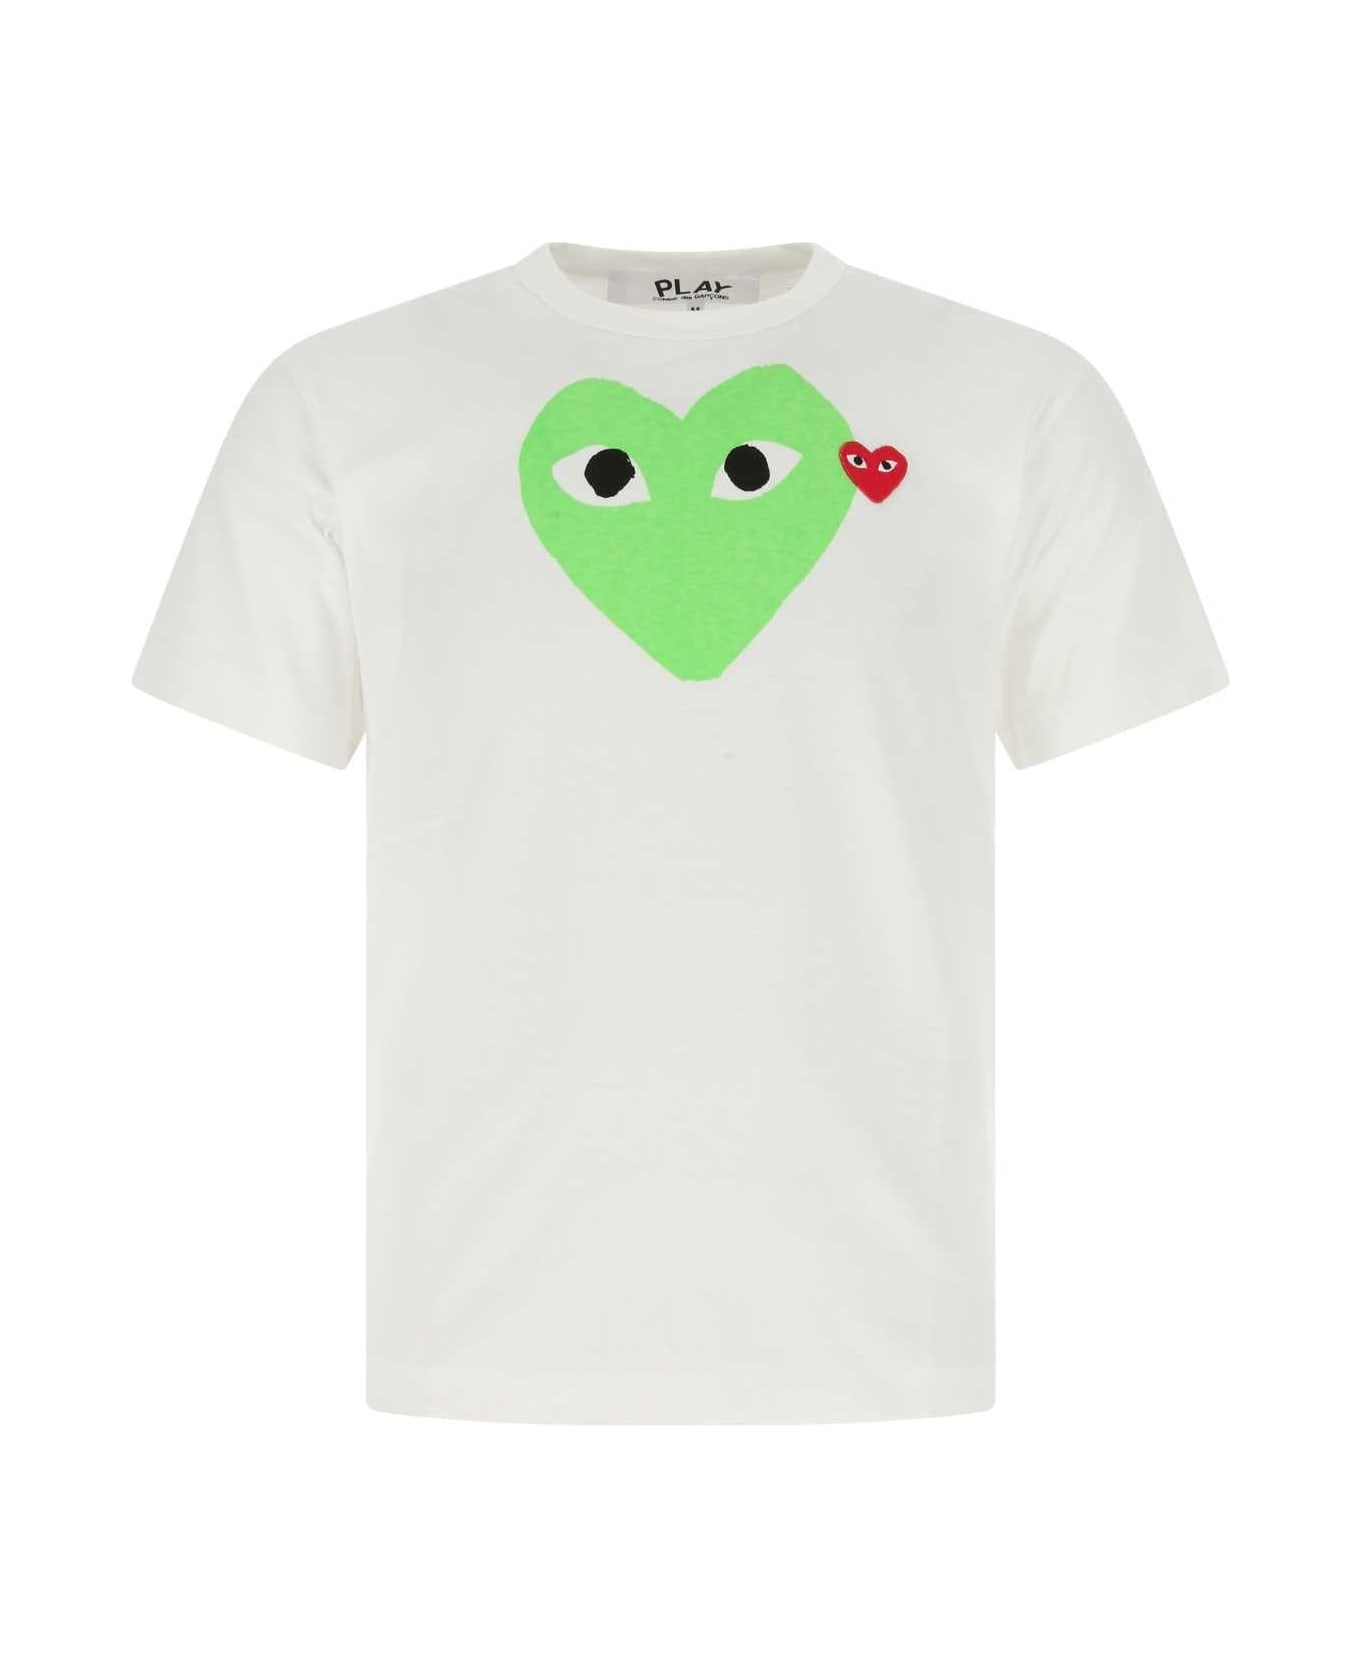 Comme des Garçons Play Heart Print Crewneck T-shirt - Green